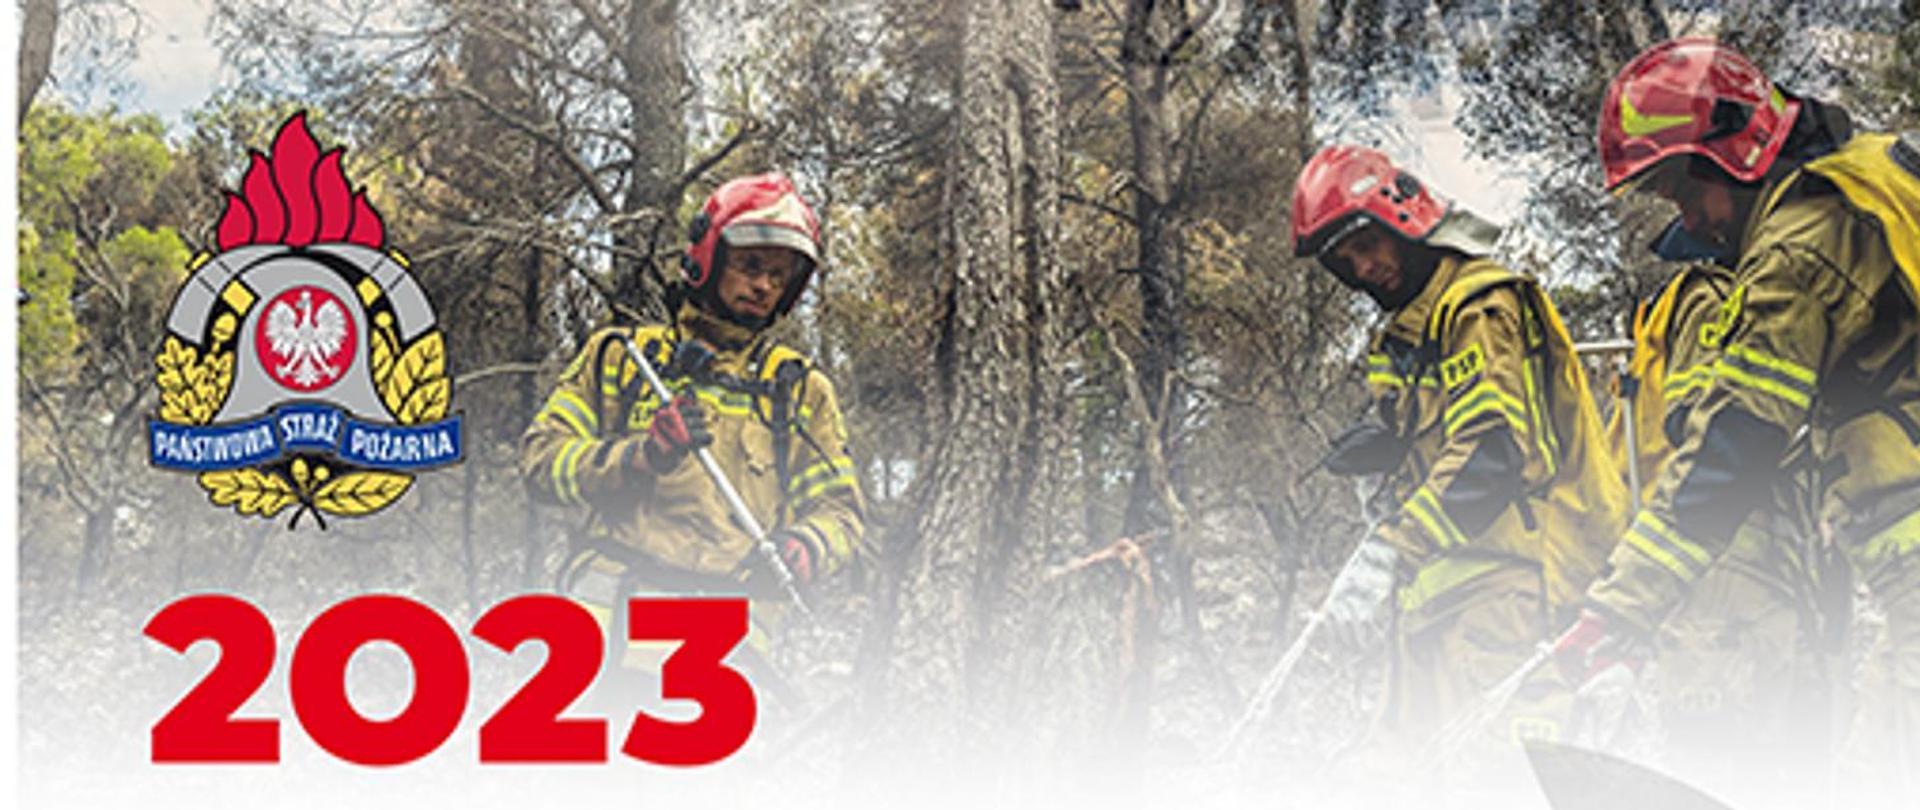 Górna część kalendarza, z lewej logo PSP, w środku i z prawej trzech strażaków gaszących pożar lasu hydronetkami, wszyscy w żółtych ubraniach specjalnych i czerwonych hełmach.